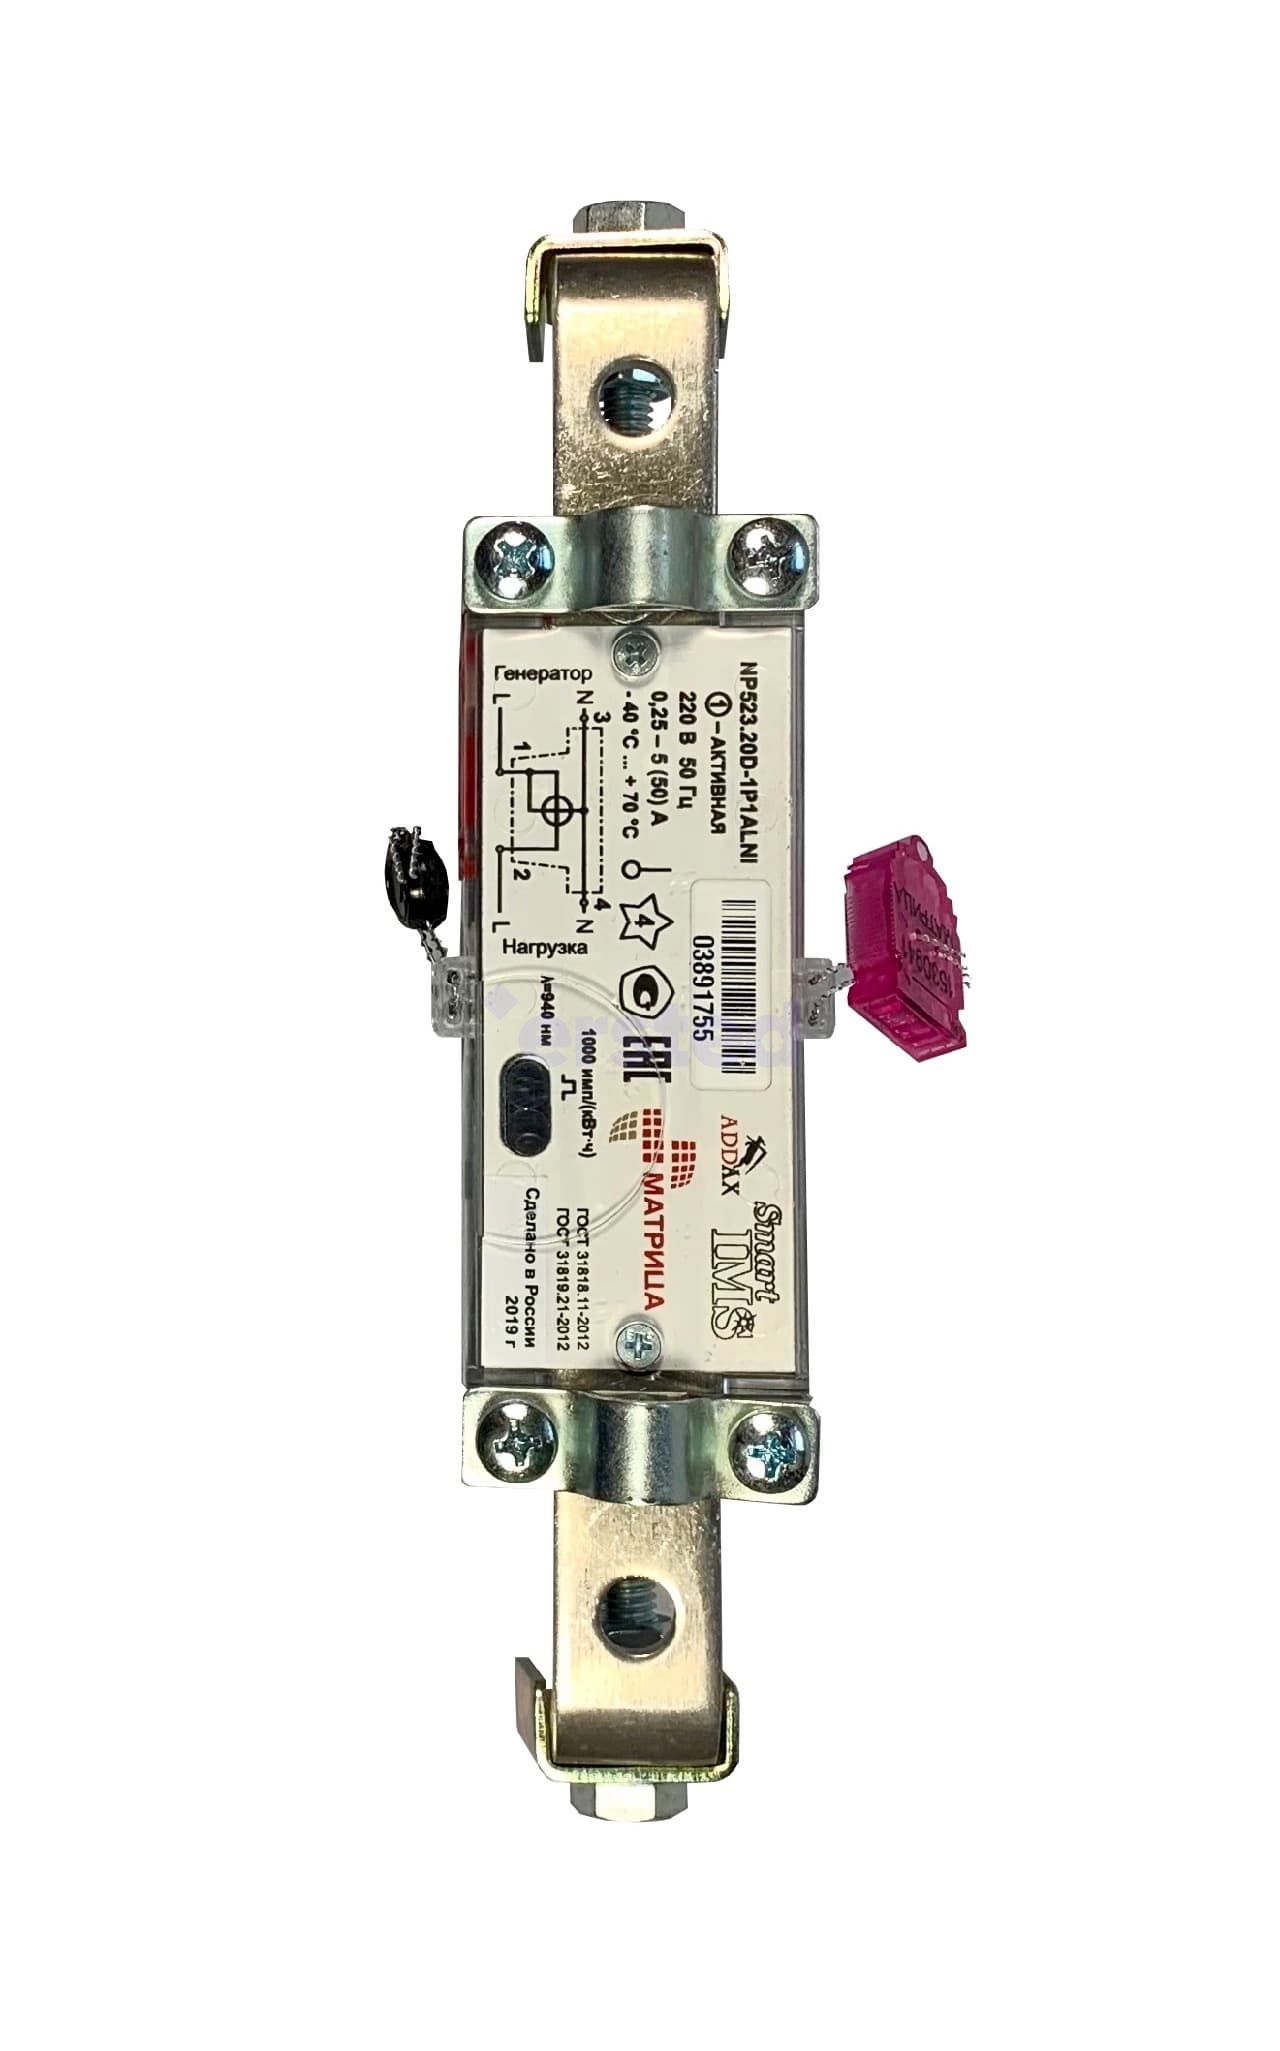 Матрица NP523 Split, 230, 5/50, однофазный, многотарифный электросчетчик, фото 